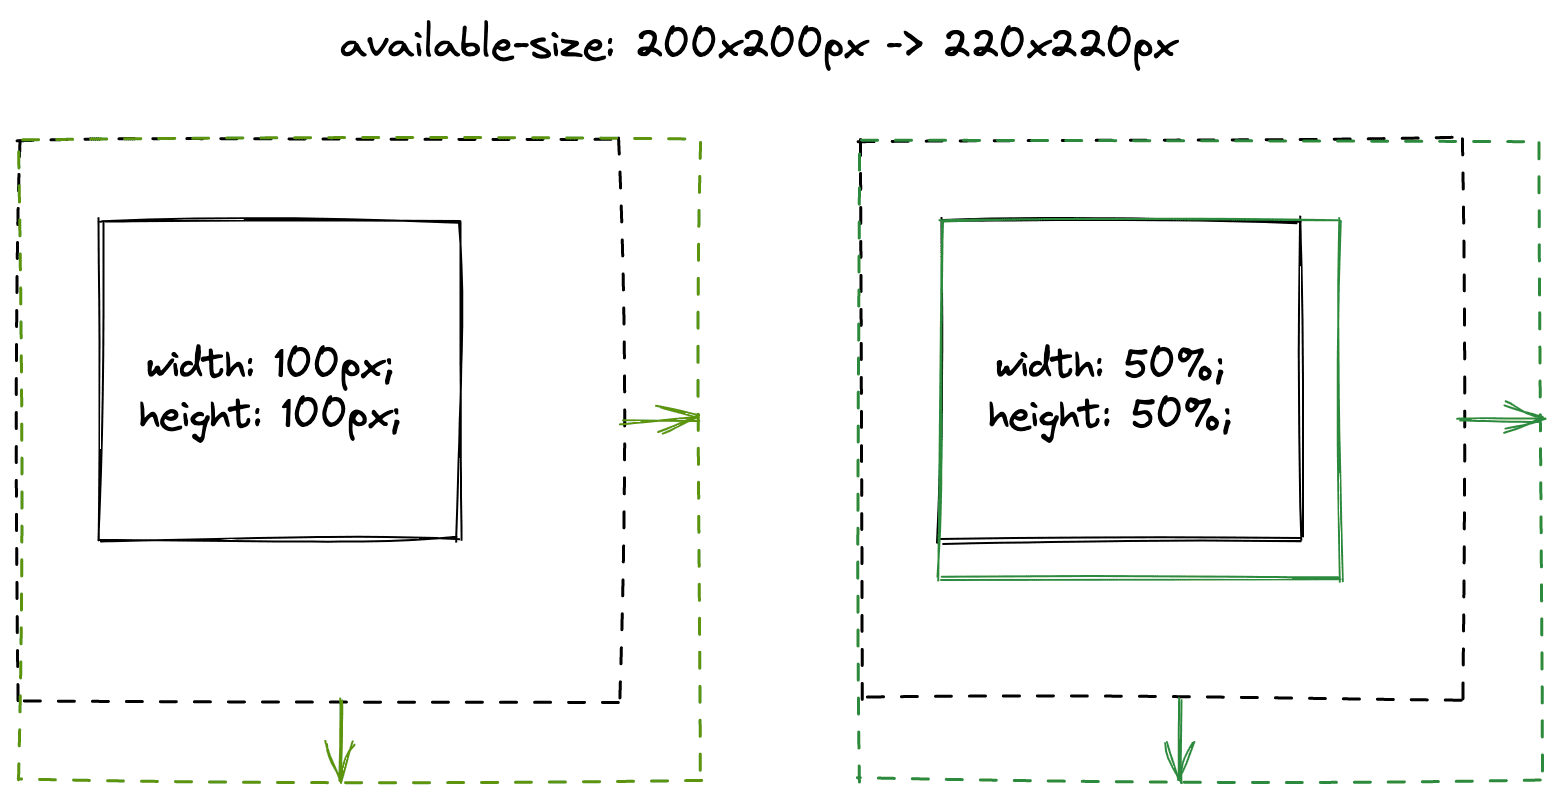 Comparer une image à largeur fixe et une image en pourcentage de largeur.